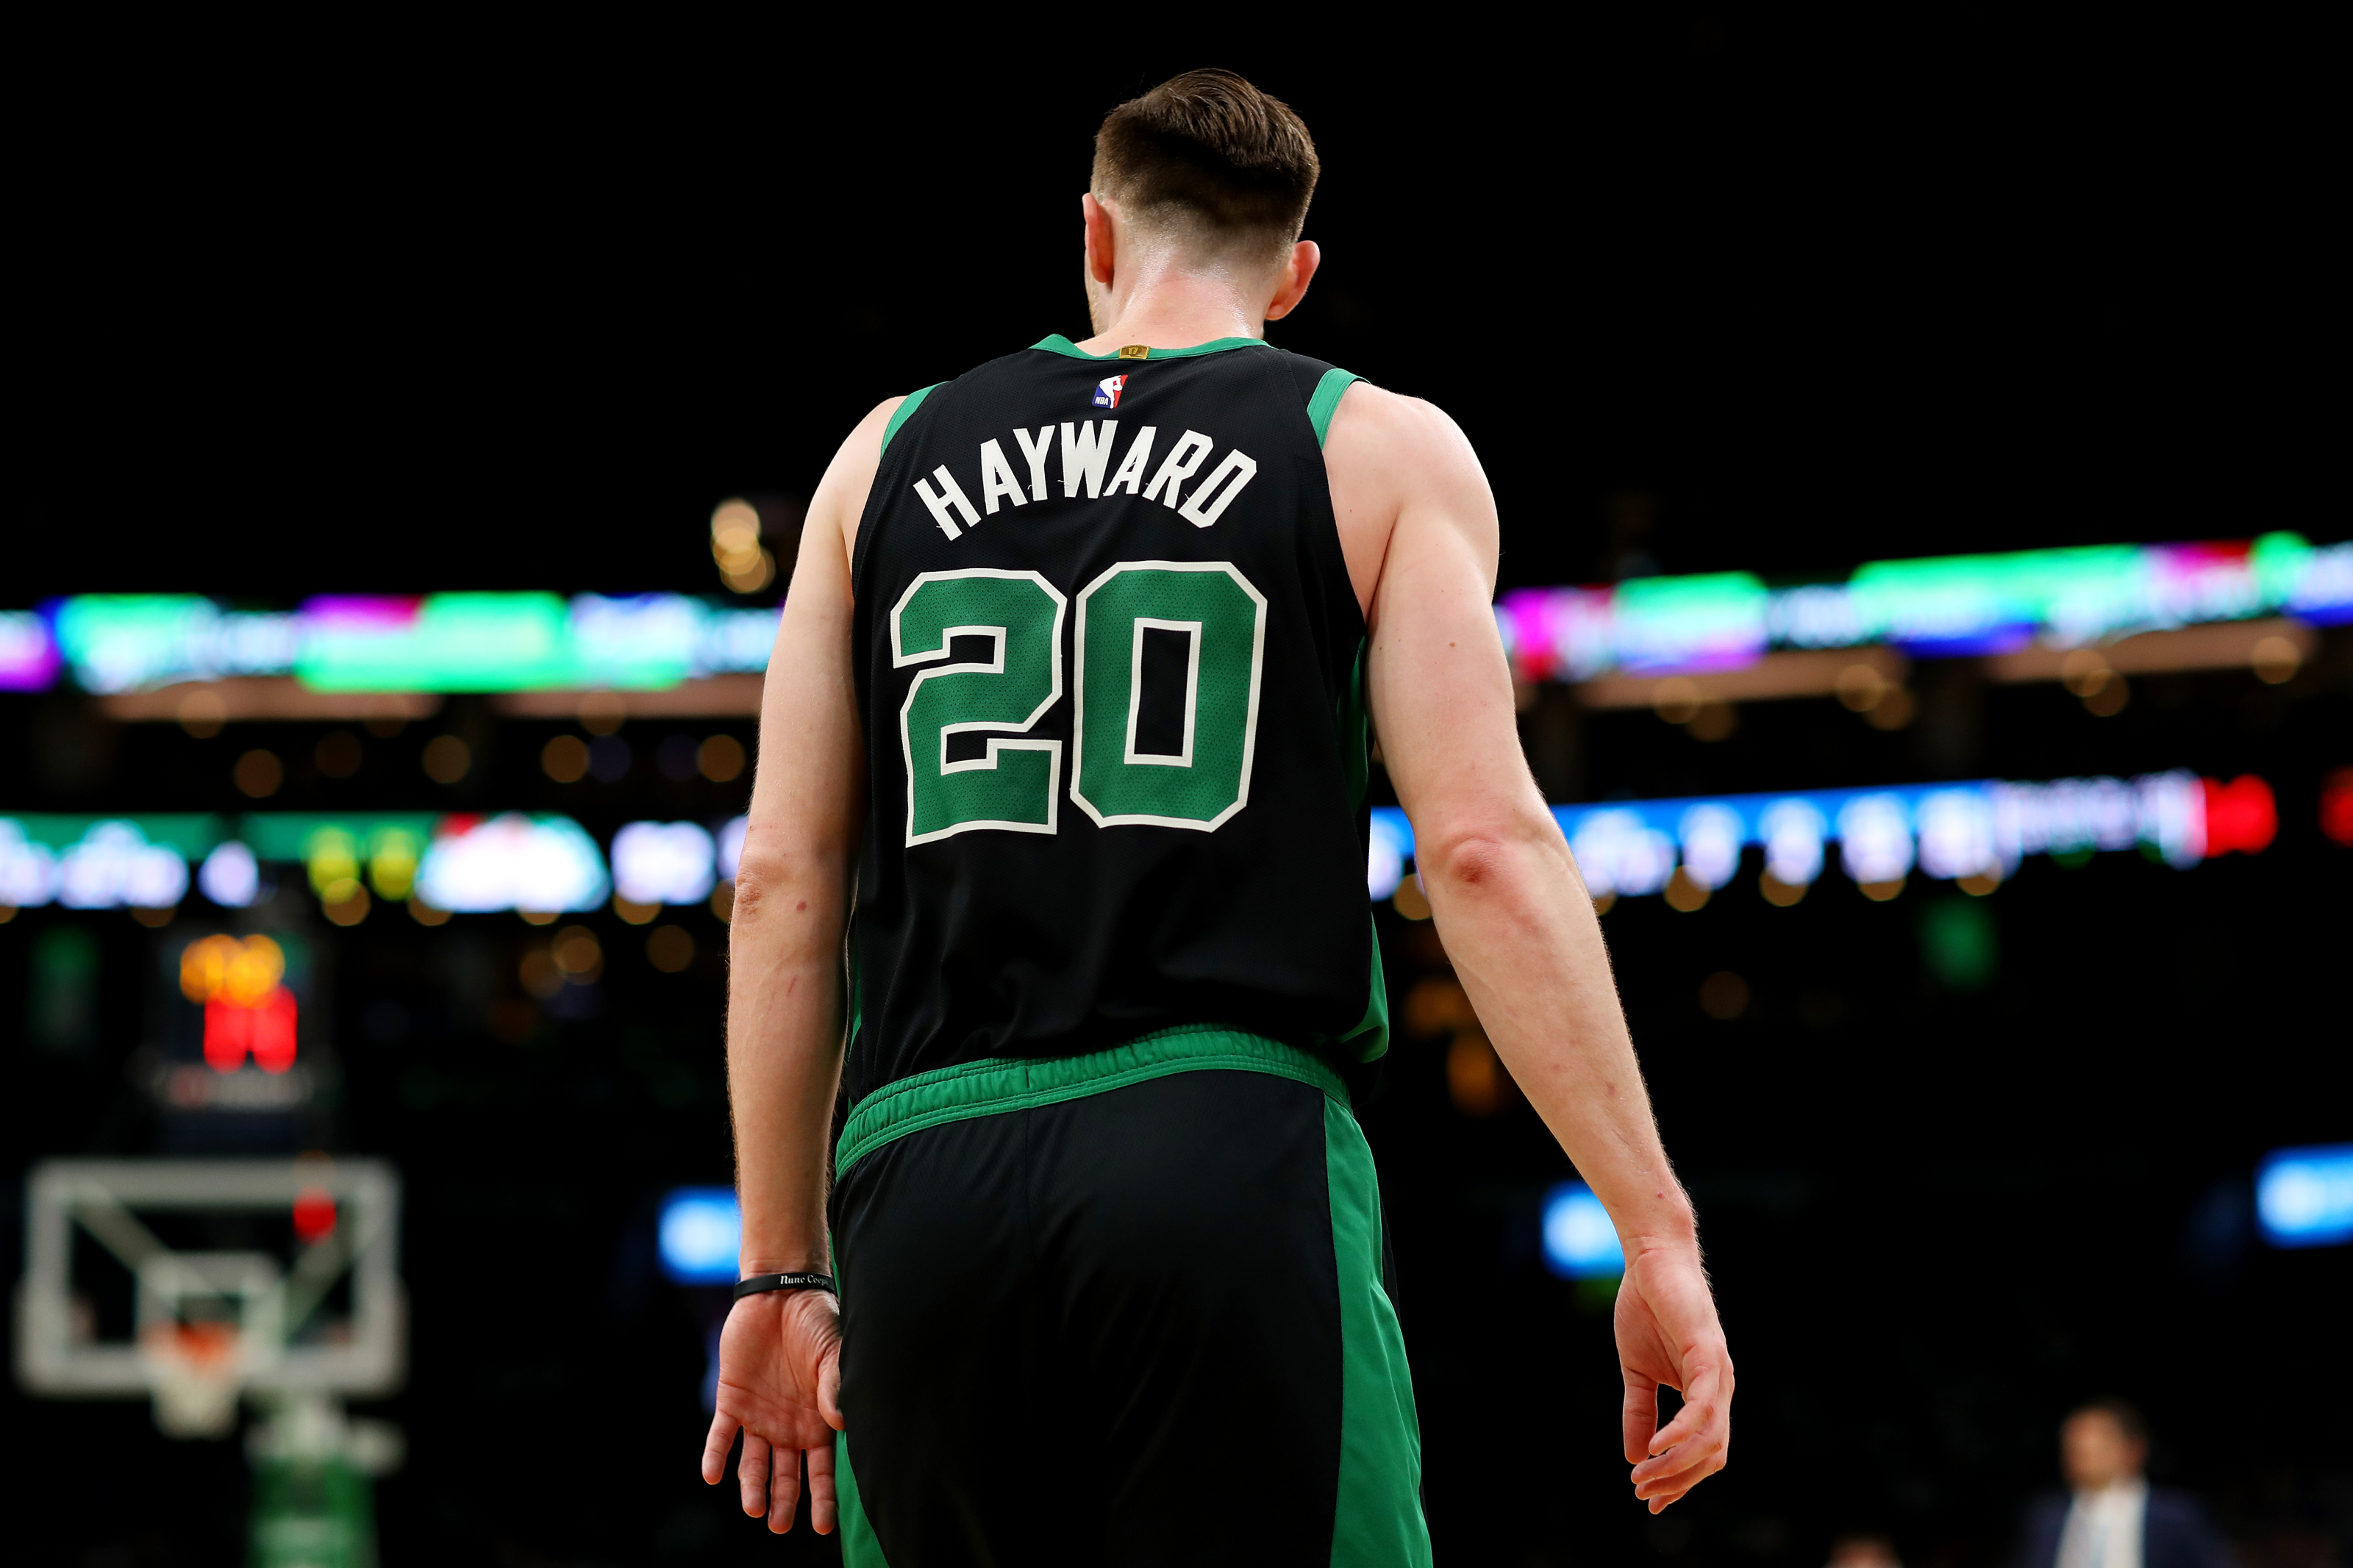 What's next for Gordon Hayward, Celtics before option deadline